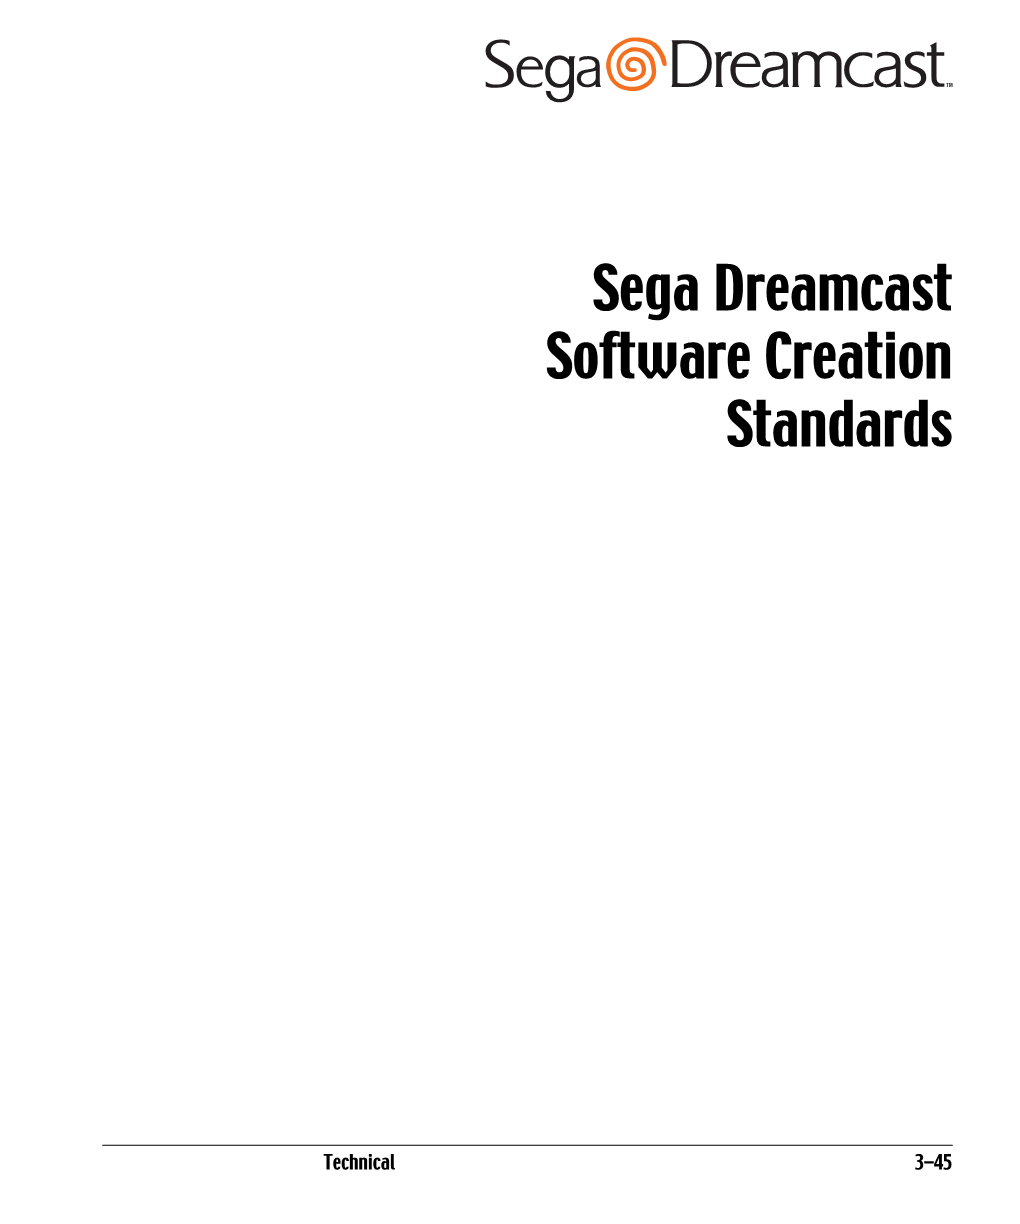 Sega Dreamcast Software Creation Standards